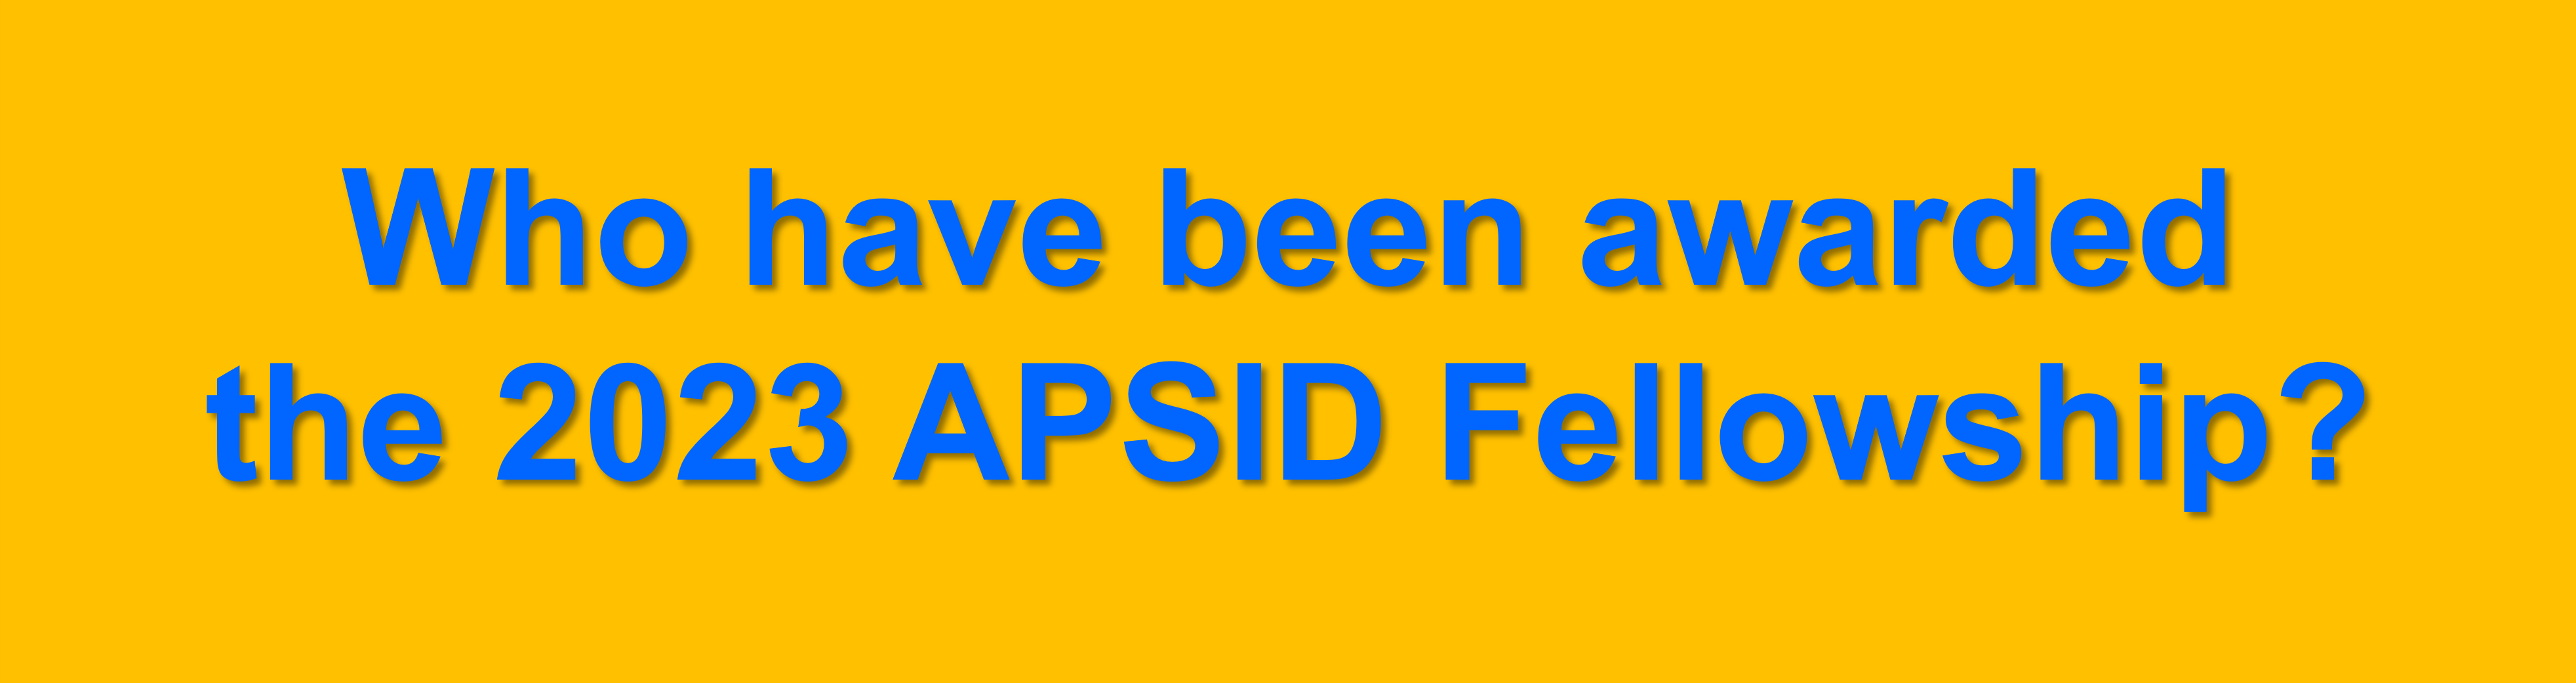 APSID Fellowship 2023